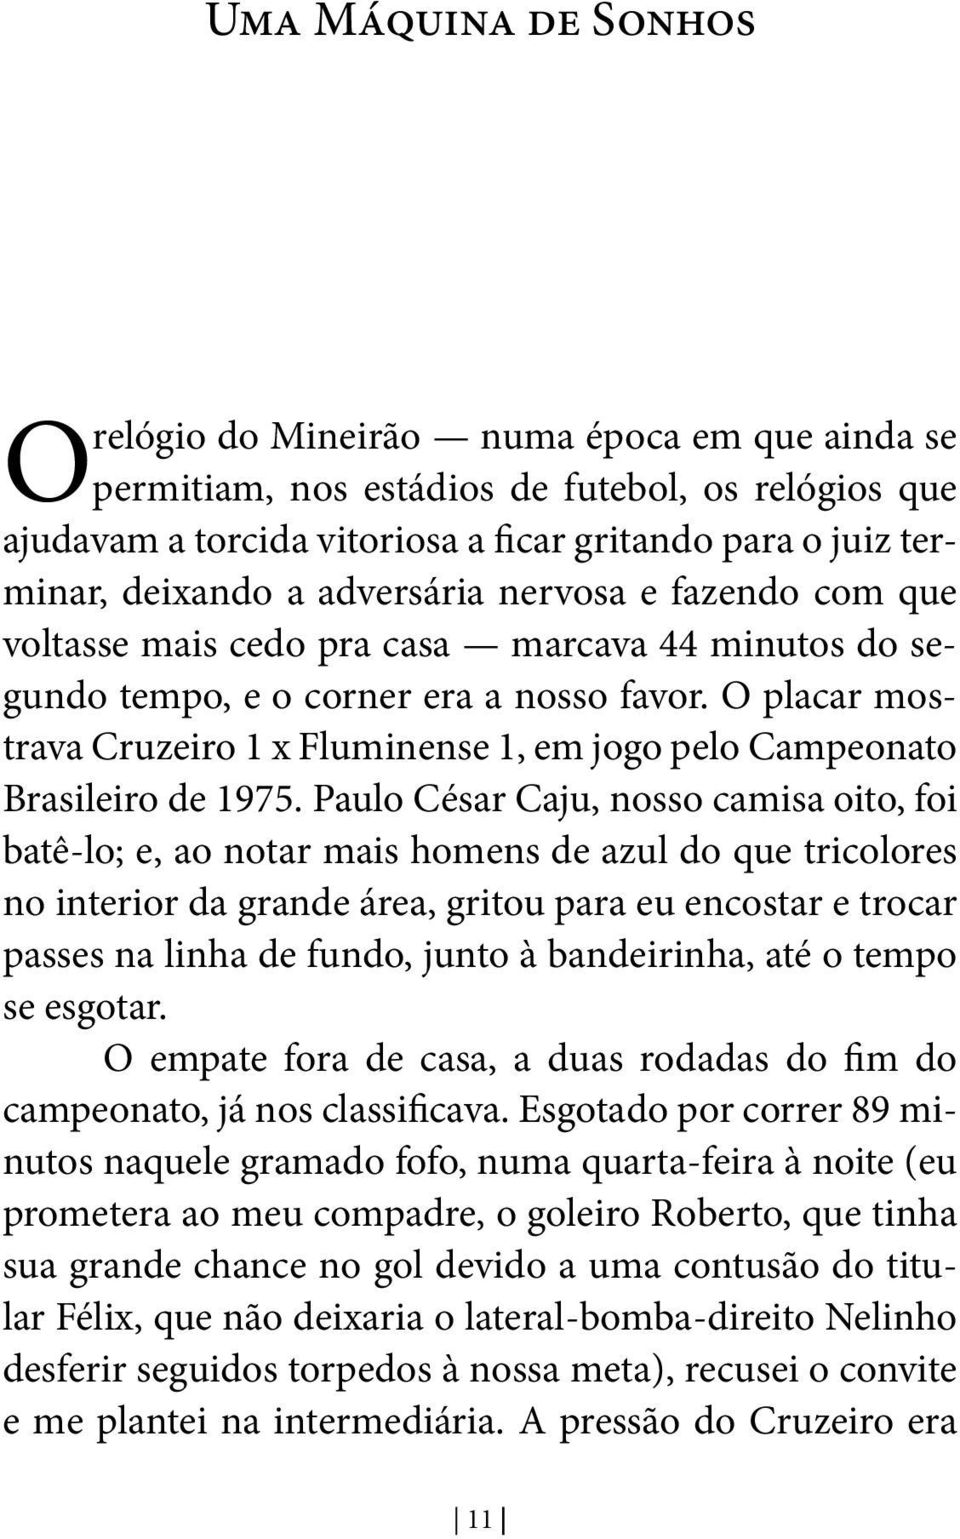 O placar mostrava Cruzeiro 1 x Fluminense 1, em jogo pelo Campeonato Brasileiro de 1975.